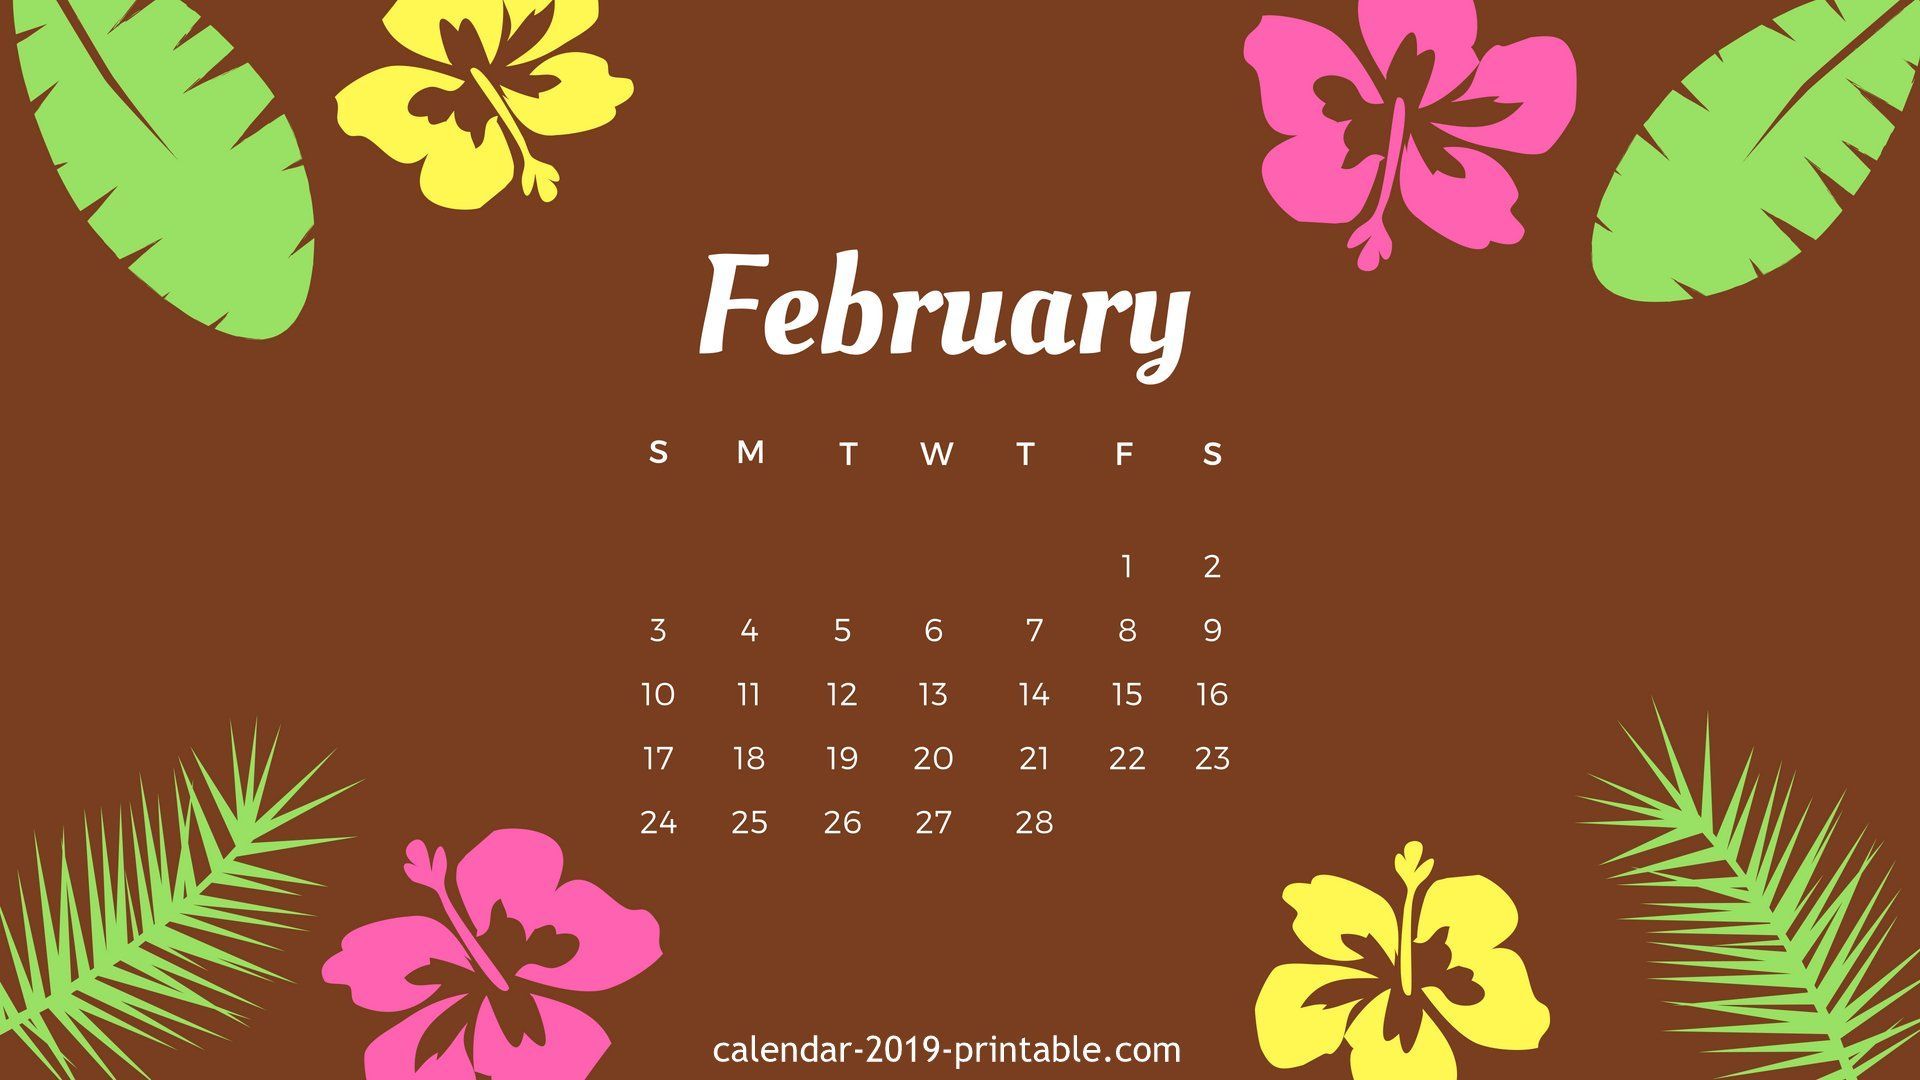 February Desktop Calendar Wallpaper